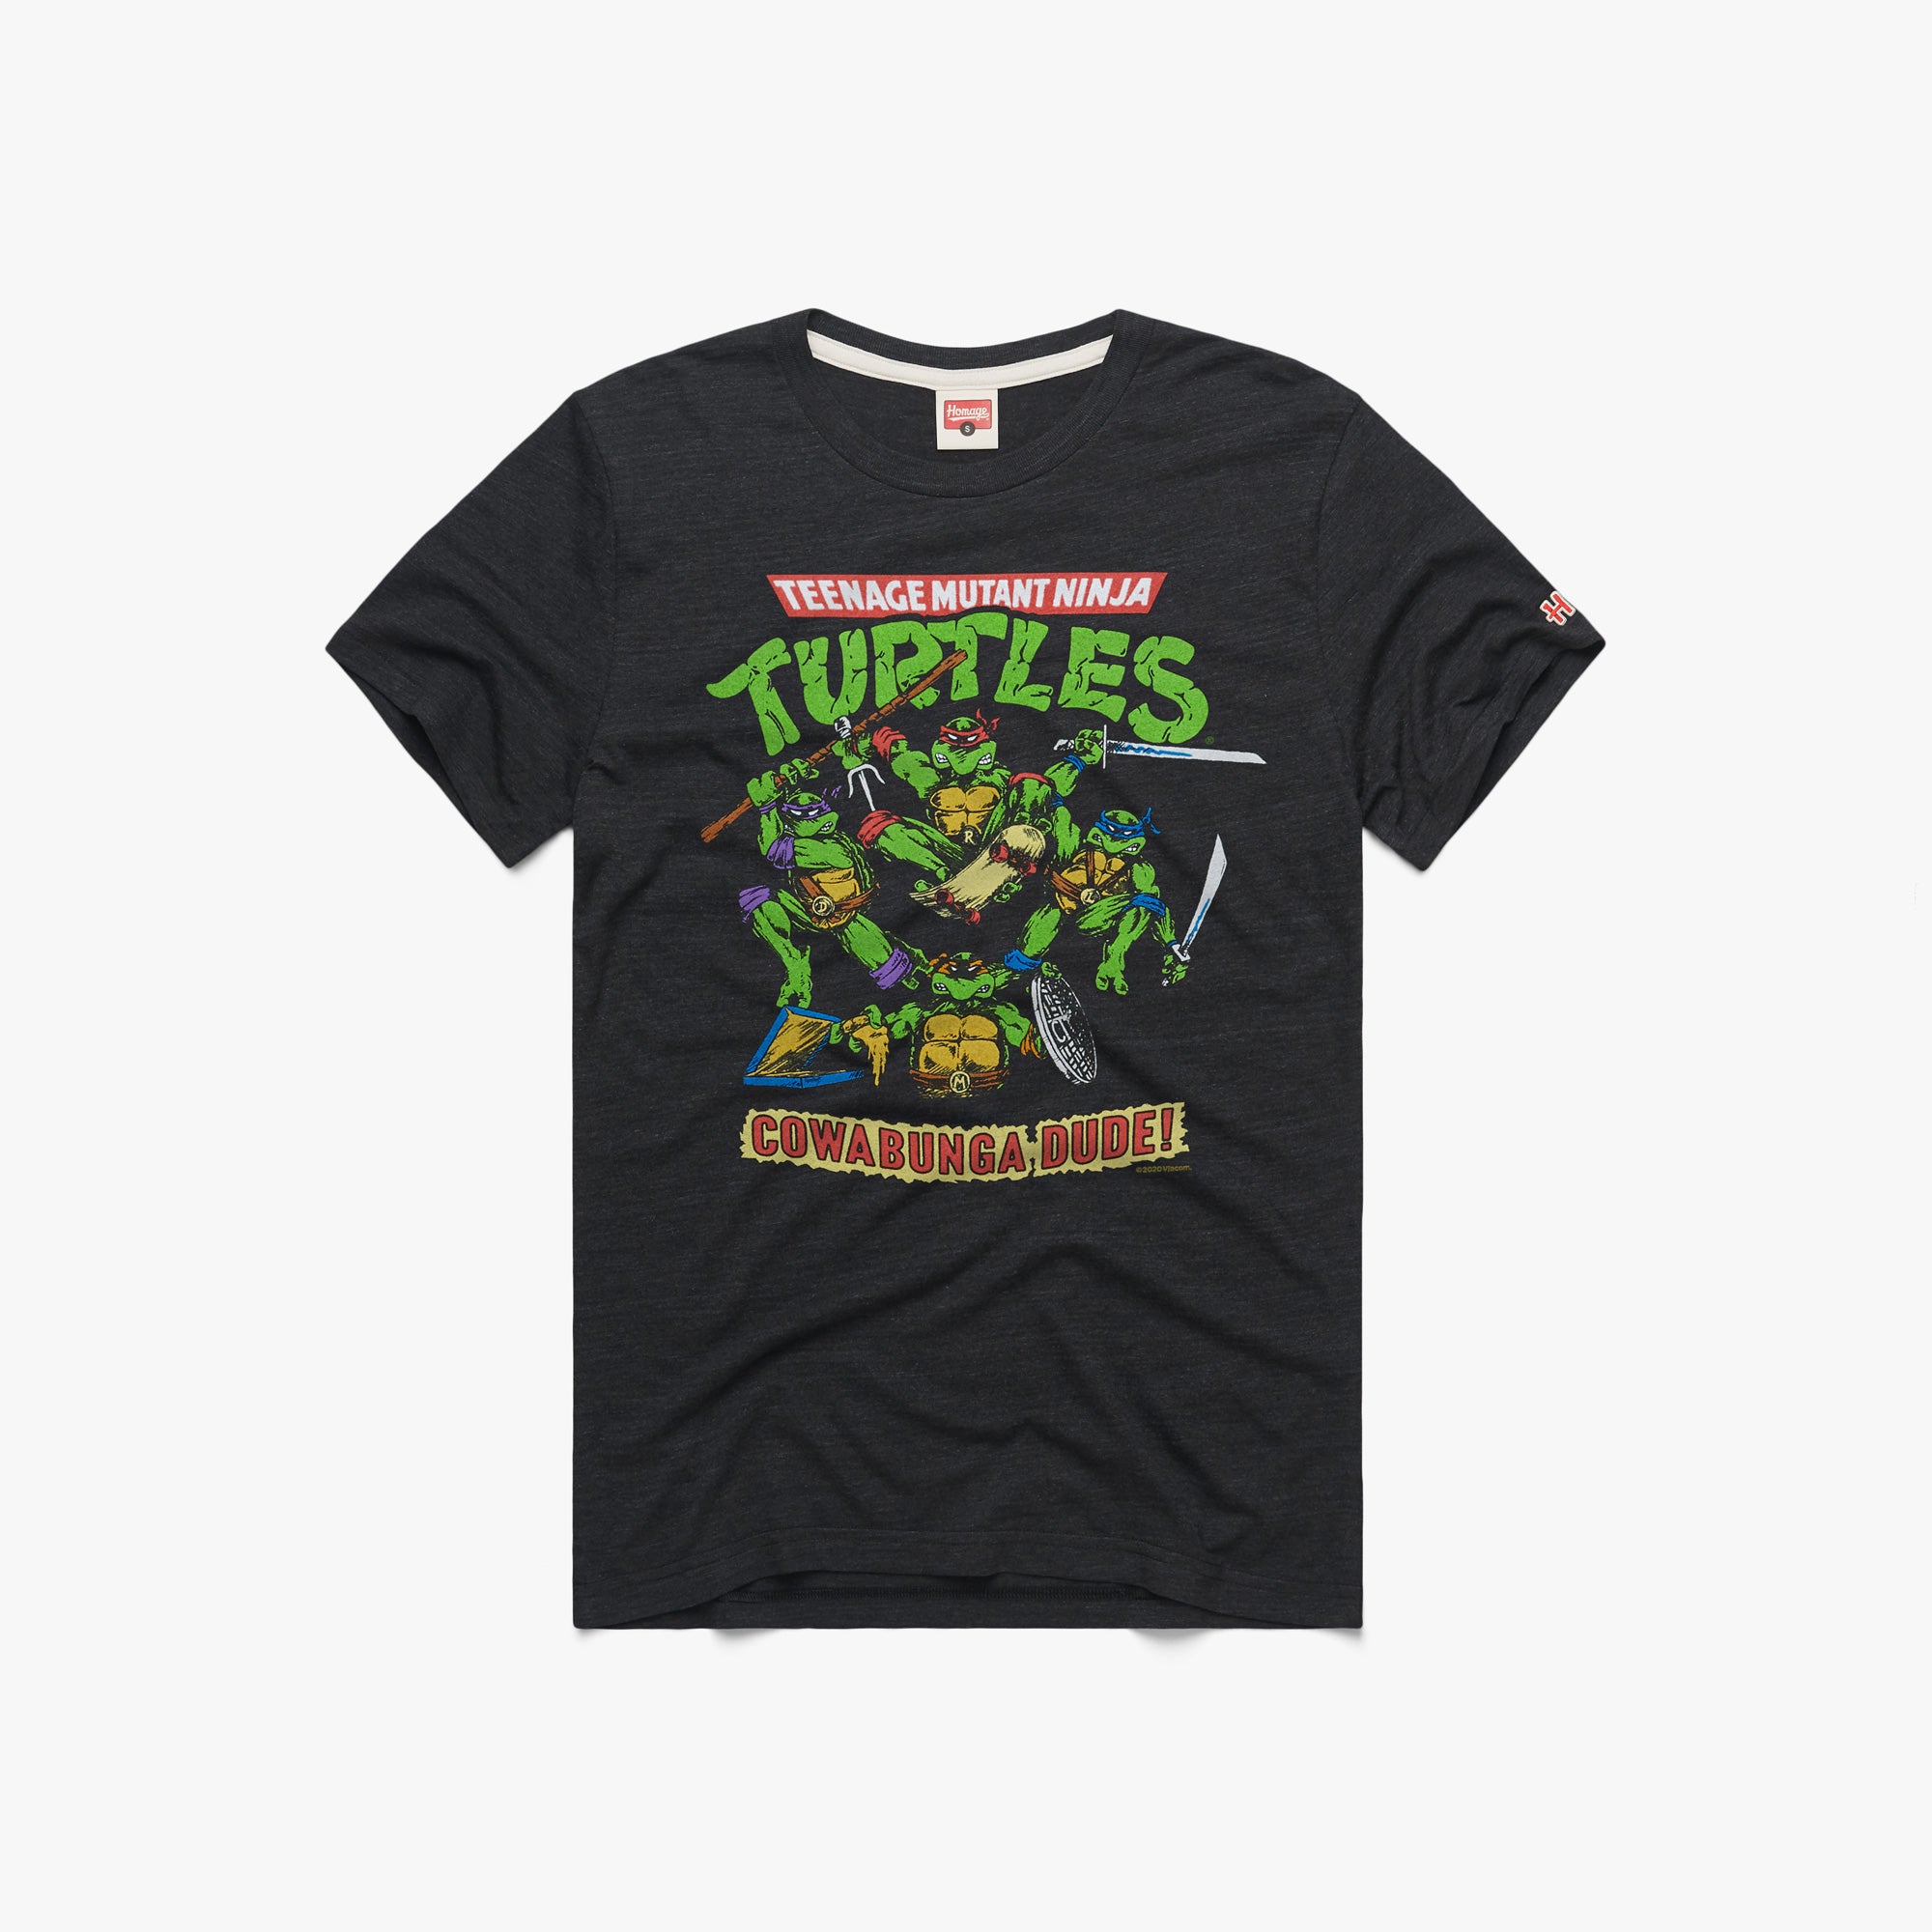 Teenage Mutant Ninja Turtles Cowabunga